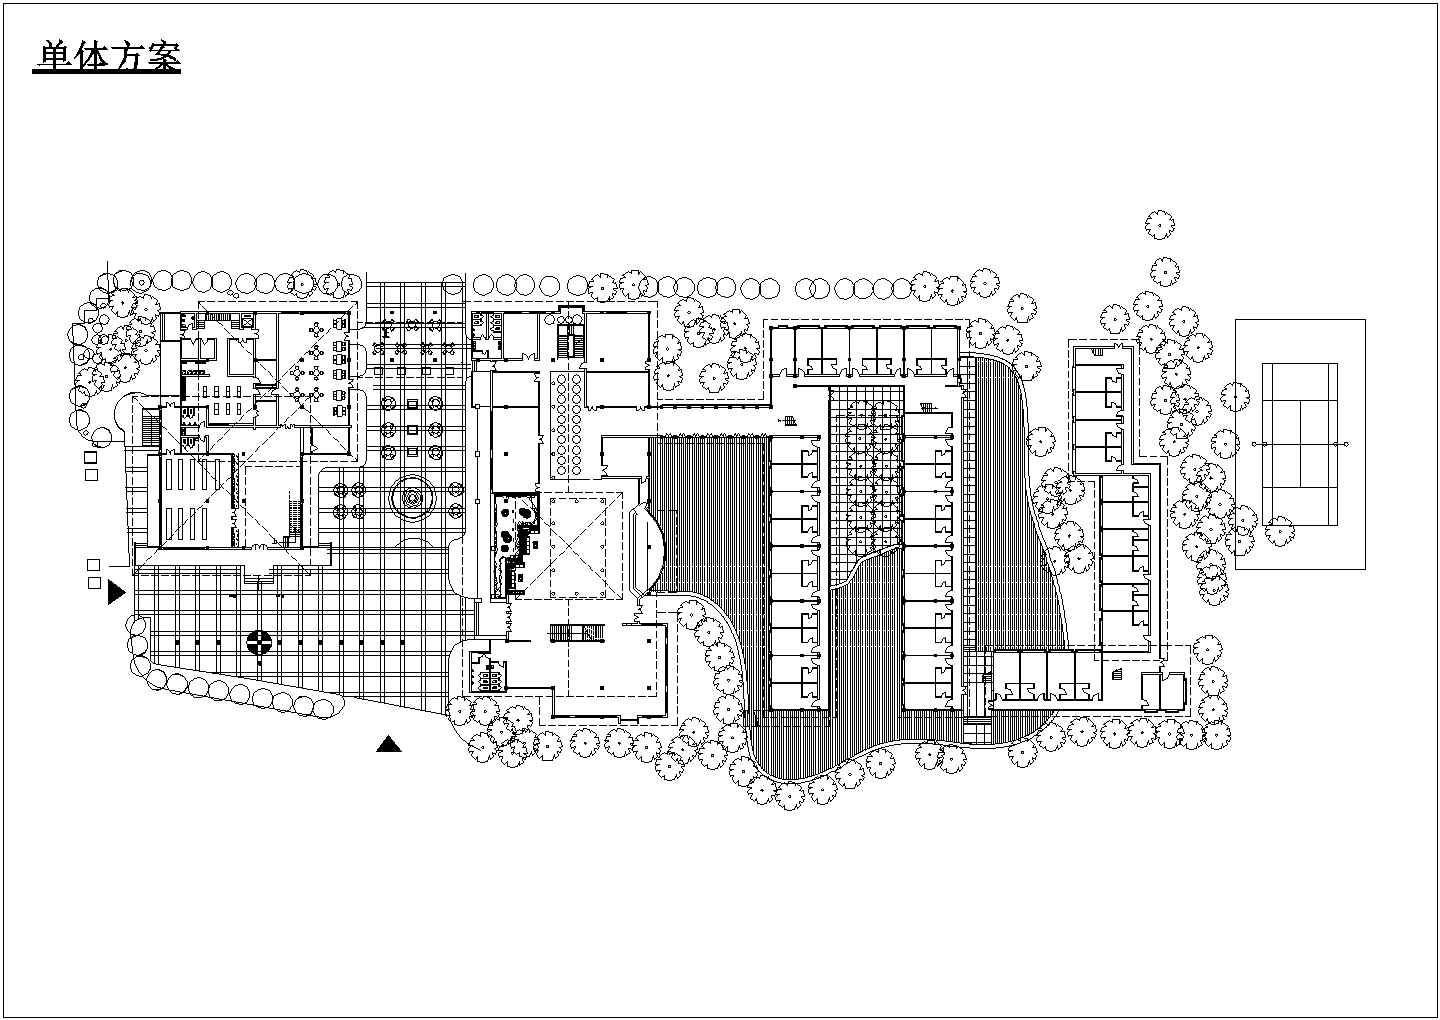 某高层假日旅馆单体建筑方案设计详细施工CAD图纸